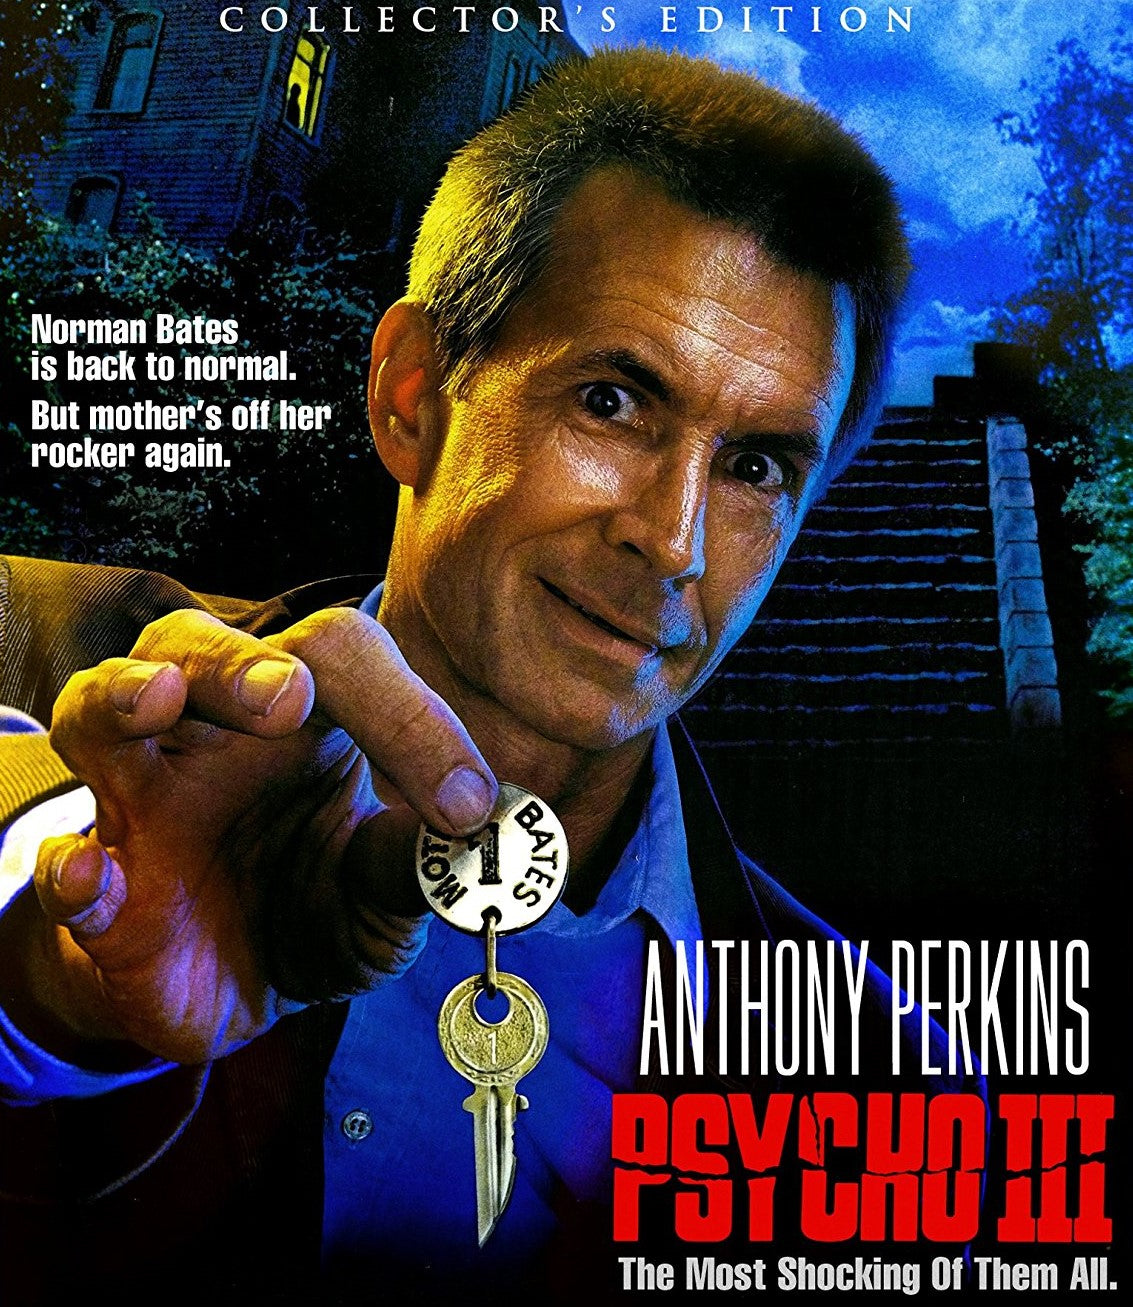 Psycho Iii (Collectors Edition) Blu-Ray Blu-Ray